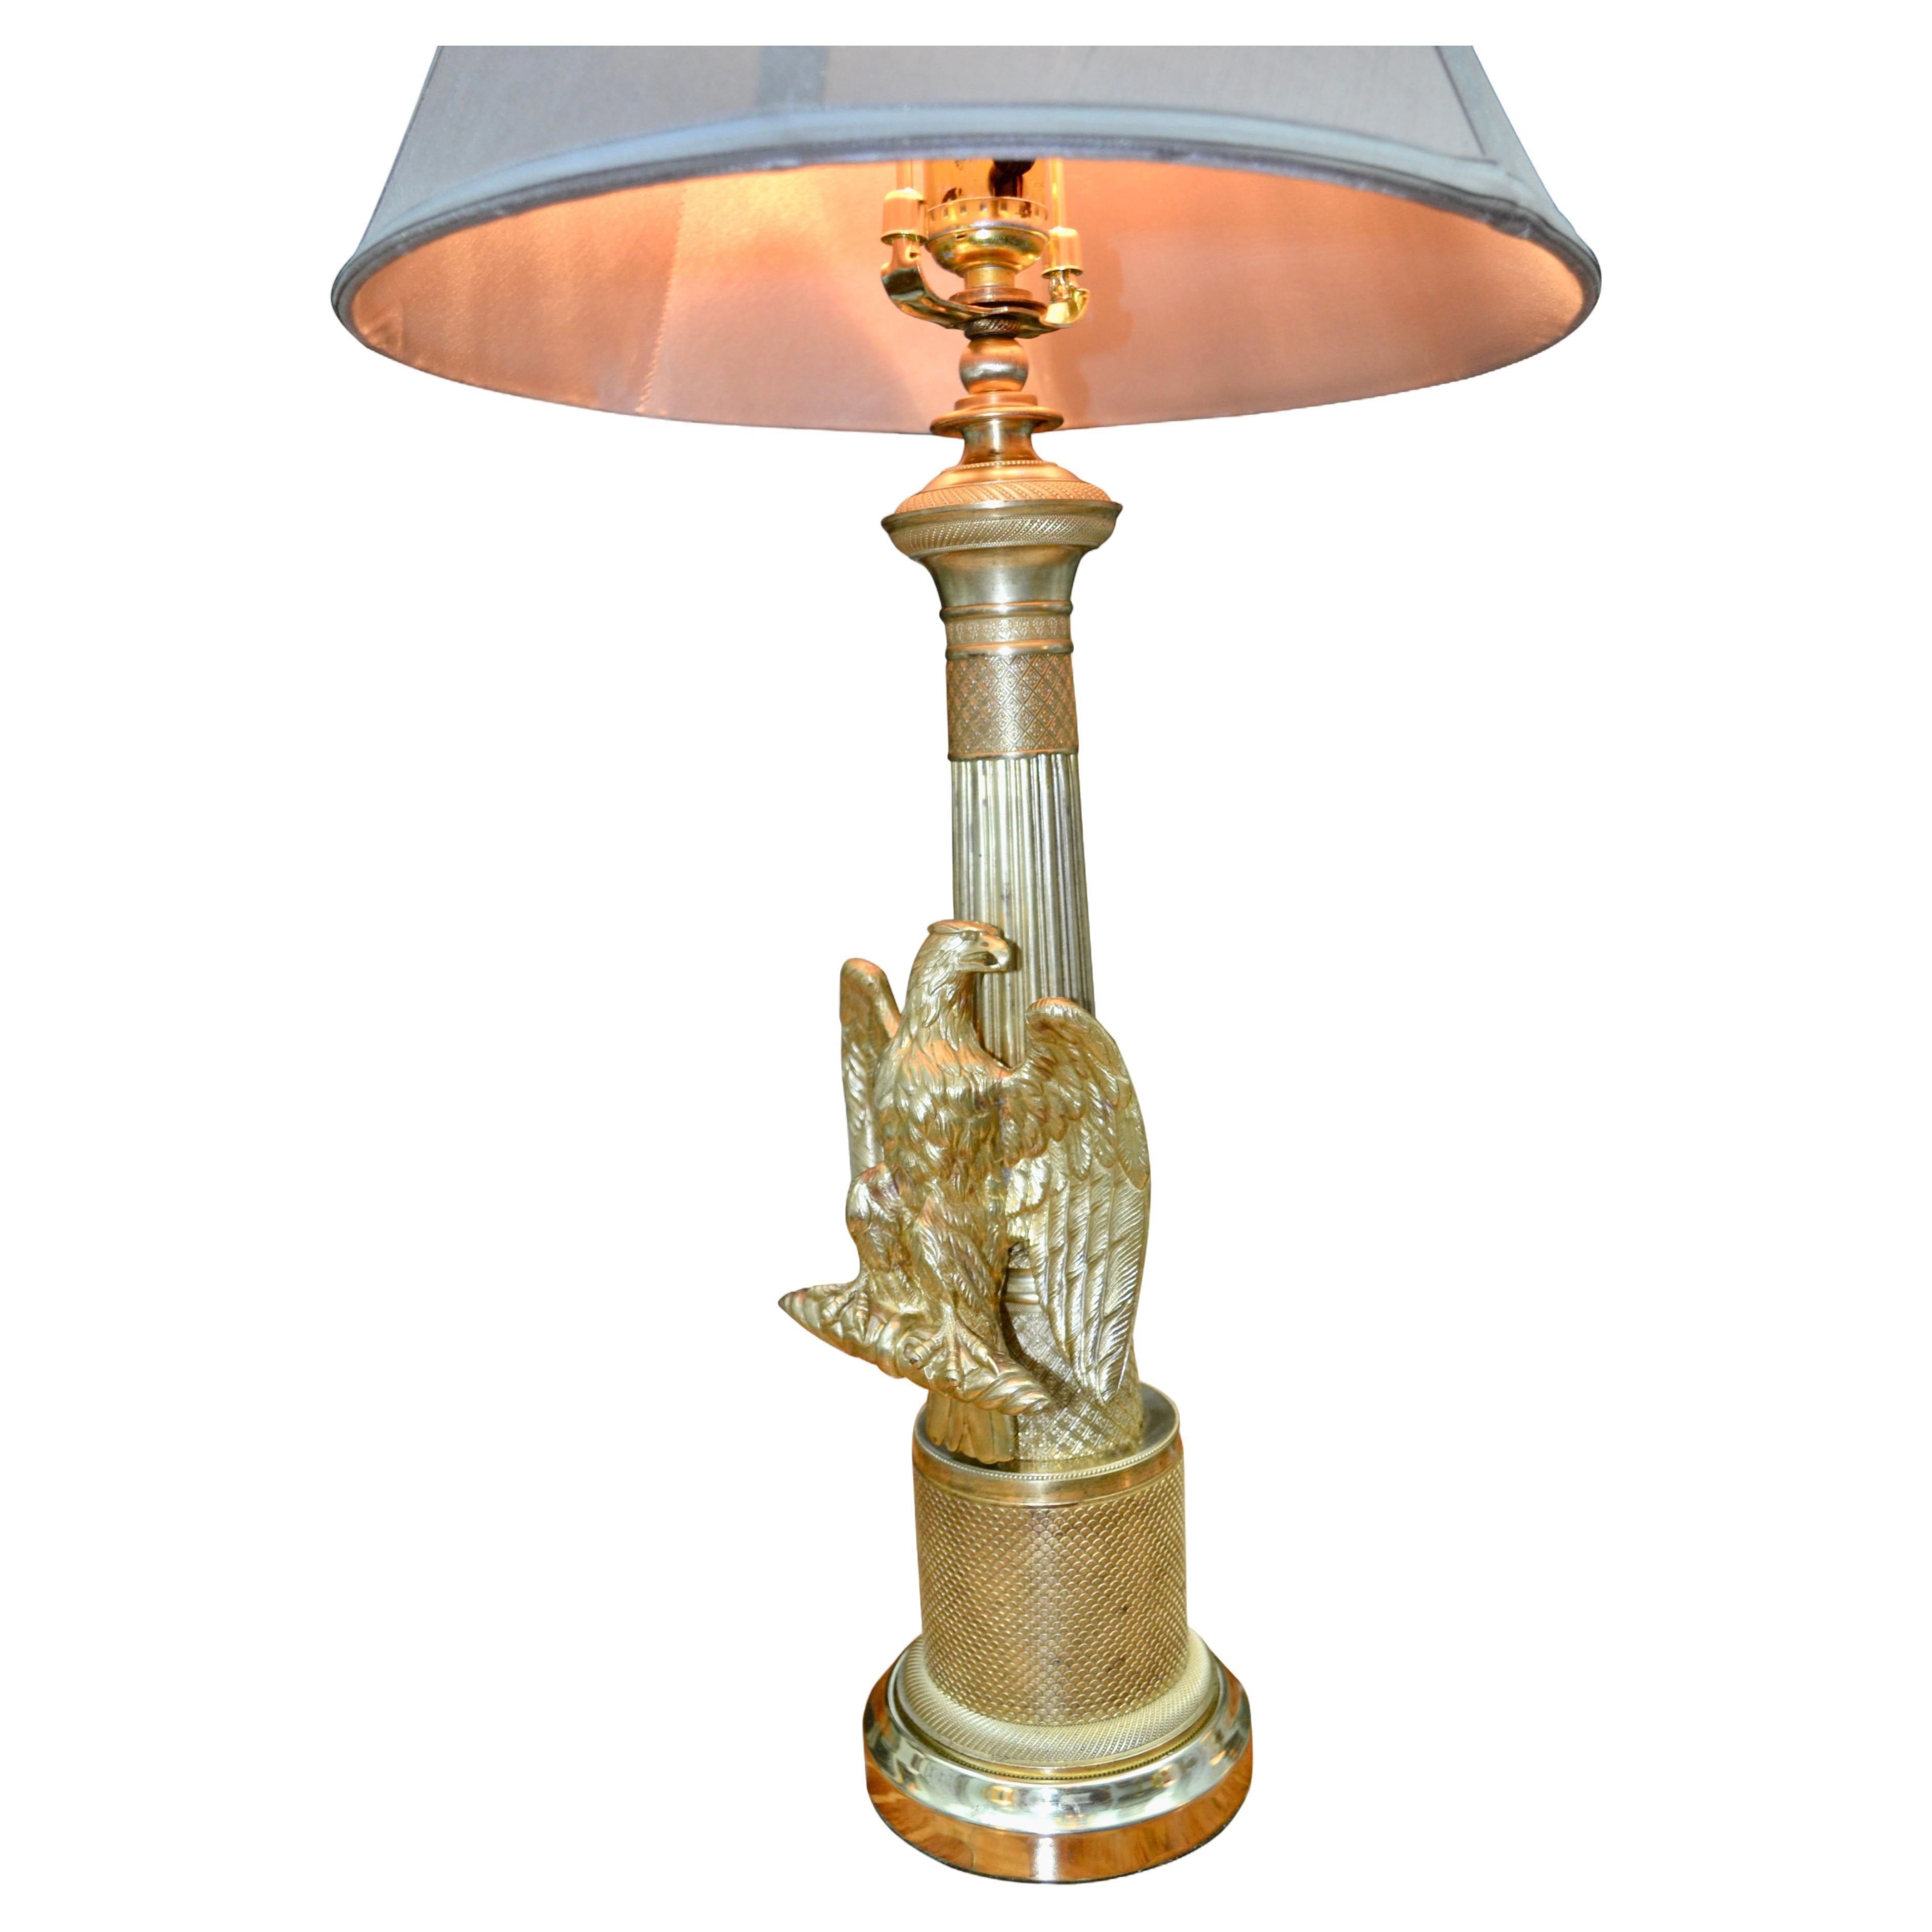 A  Sehr dekorative Lampe im französischen Empire-Stil, wahrscheinlich aus dem frühen 20. Jahrhundert. Die polierte Messingsäule war wahrscheinlich der Stiel eines Leuchters, der später mit einem Adler verziert wurde, der mit ausgebreiteten Flügeln